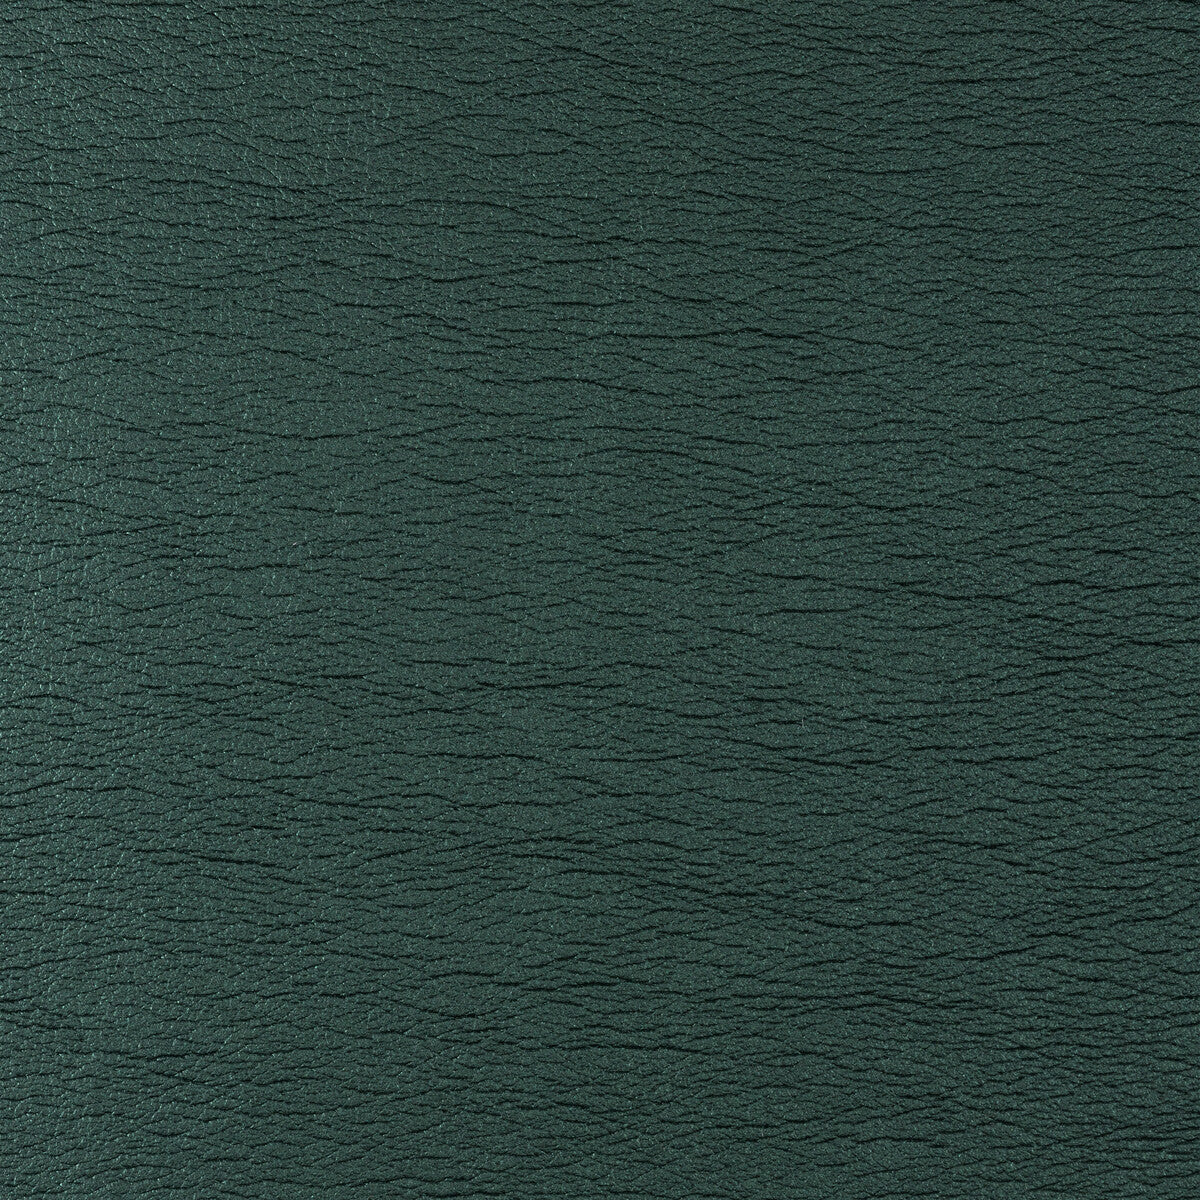 Kravet Design fabric in galleon-35 color - pattern GALLEON.35.0 - by Kravet Design